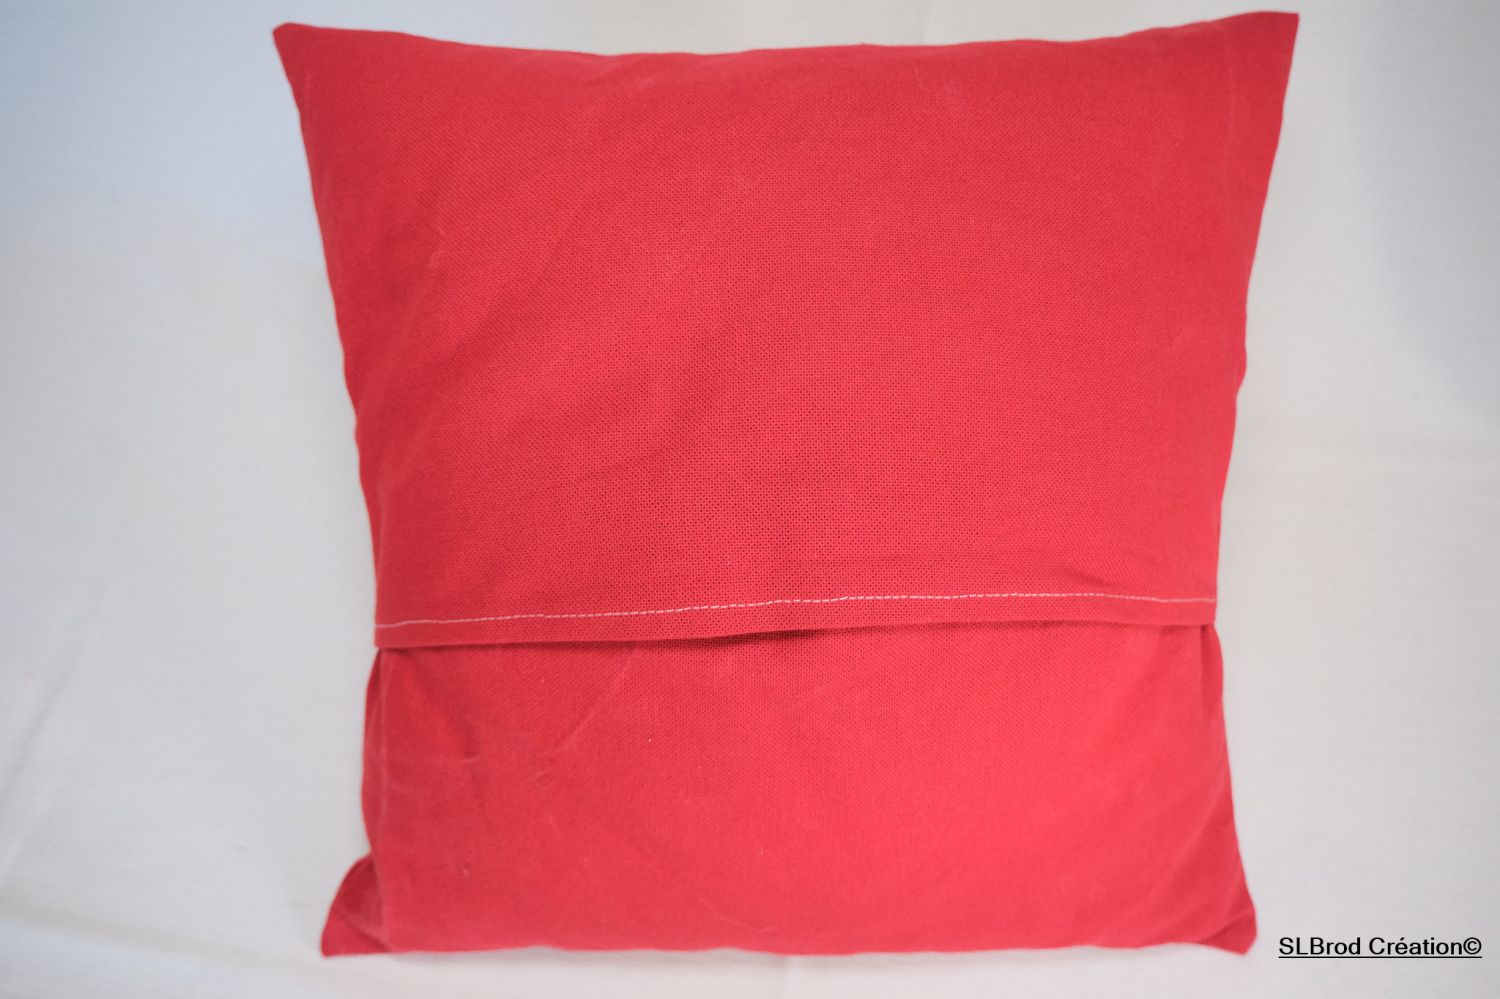 Cushion cover Santa Claus head in appliqué